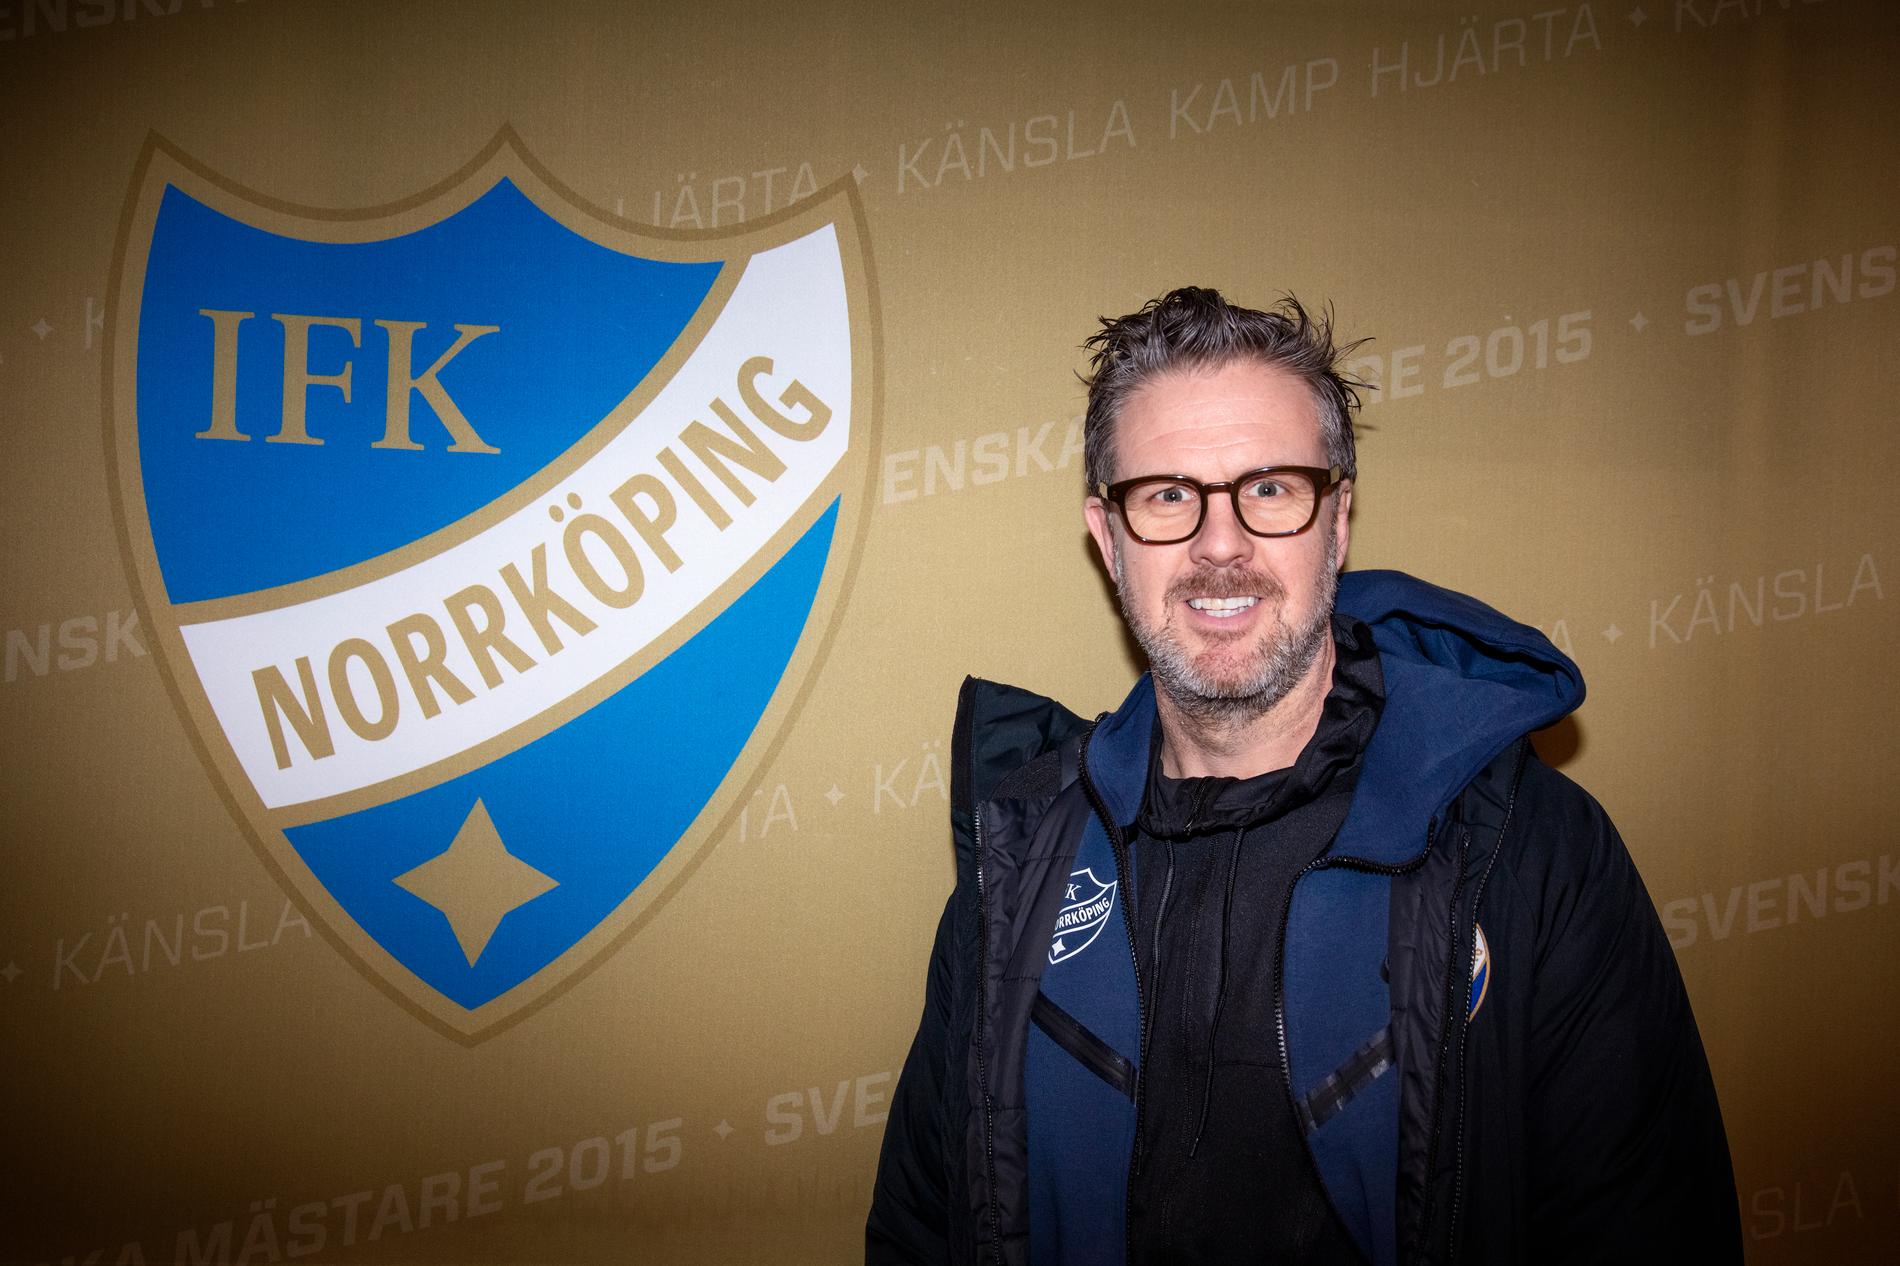 Rikard Norling förde både Malmö FF och AIK till mästerskapstiteln. Nu är uppgiften att göra IFK Norrköping till en seriös utmanare om SM-guldet.